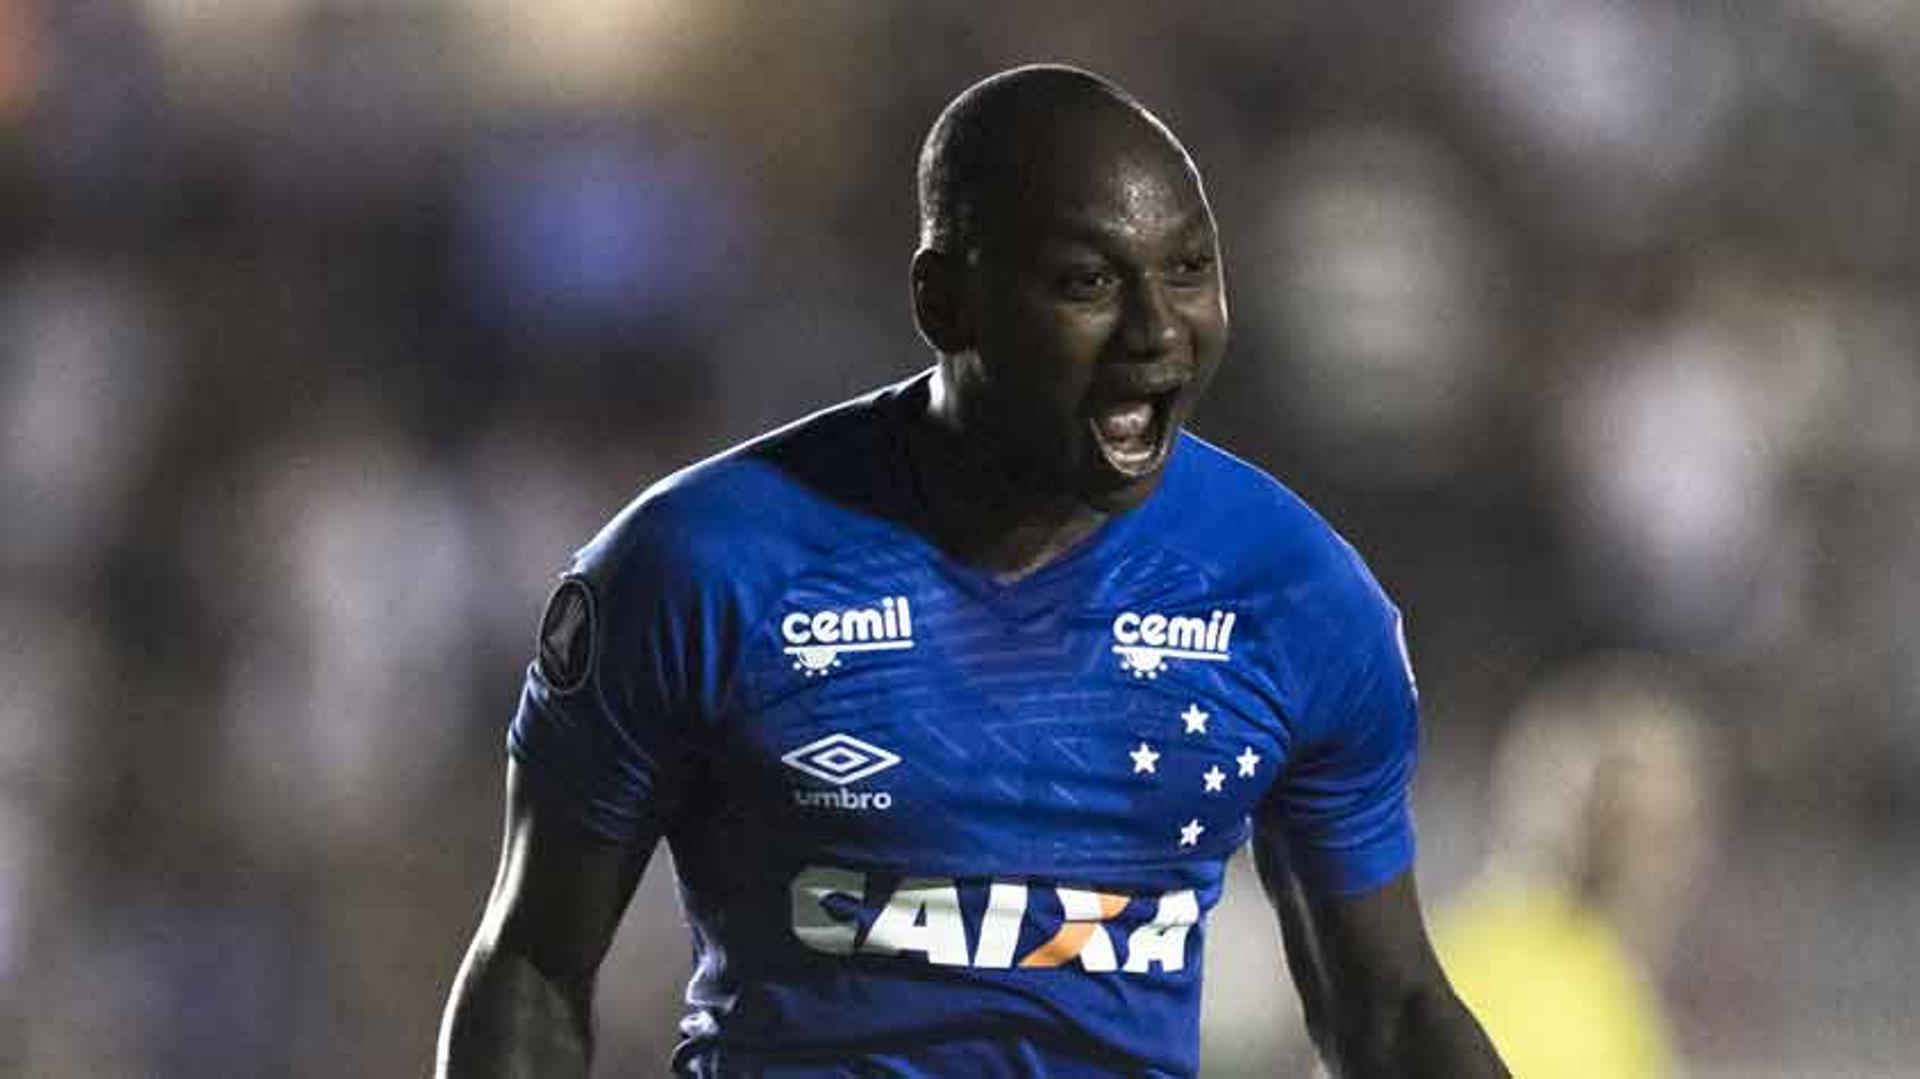 Vasco 0 x 4 Cruzeiro: as imagens da partida